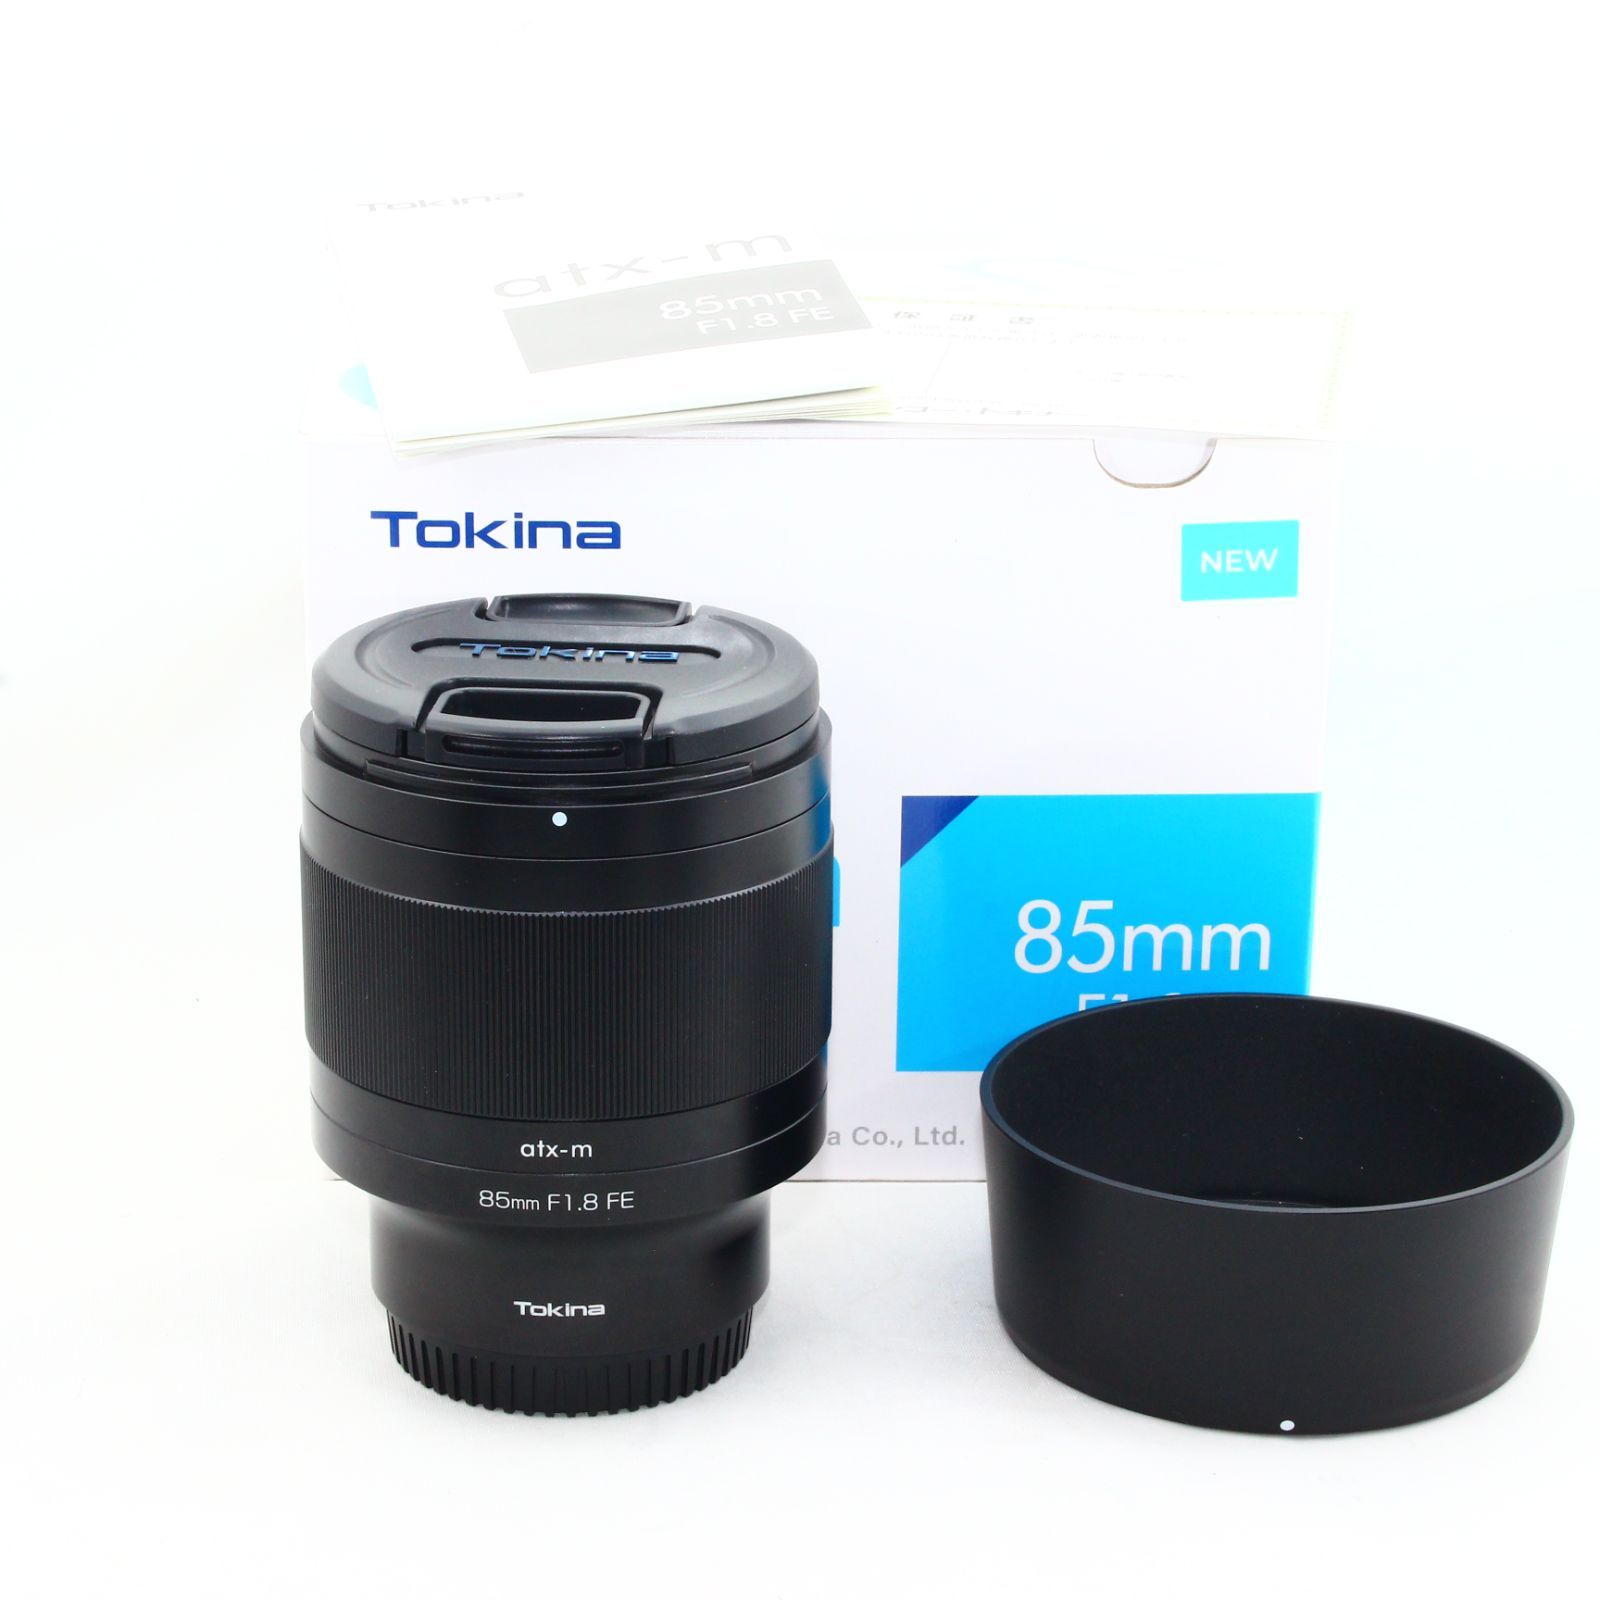 Tokina 単焦点望遠レンズ atx-m 85mm F1.8 FE ソニーαE用 フルサイズ